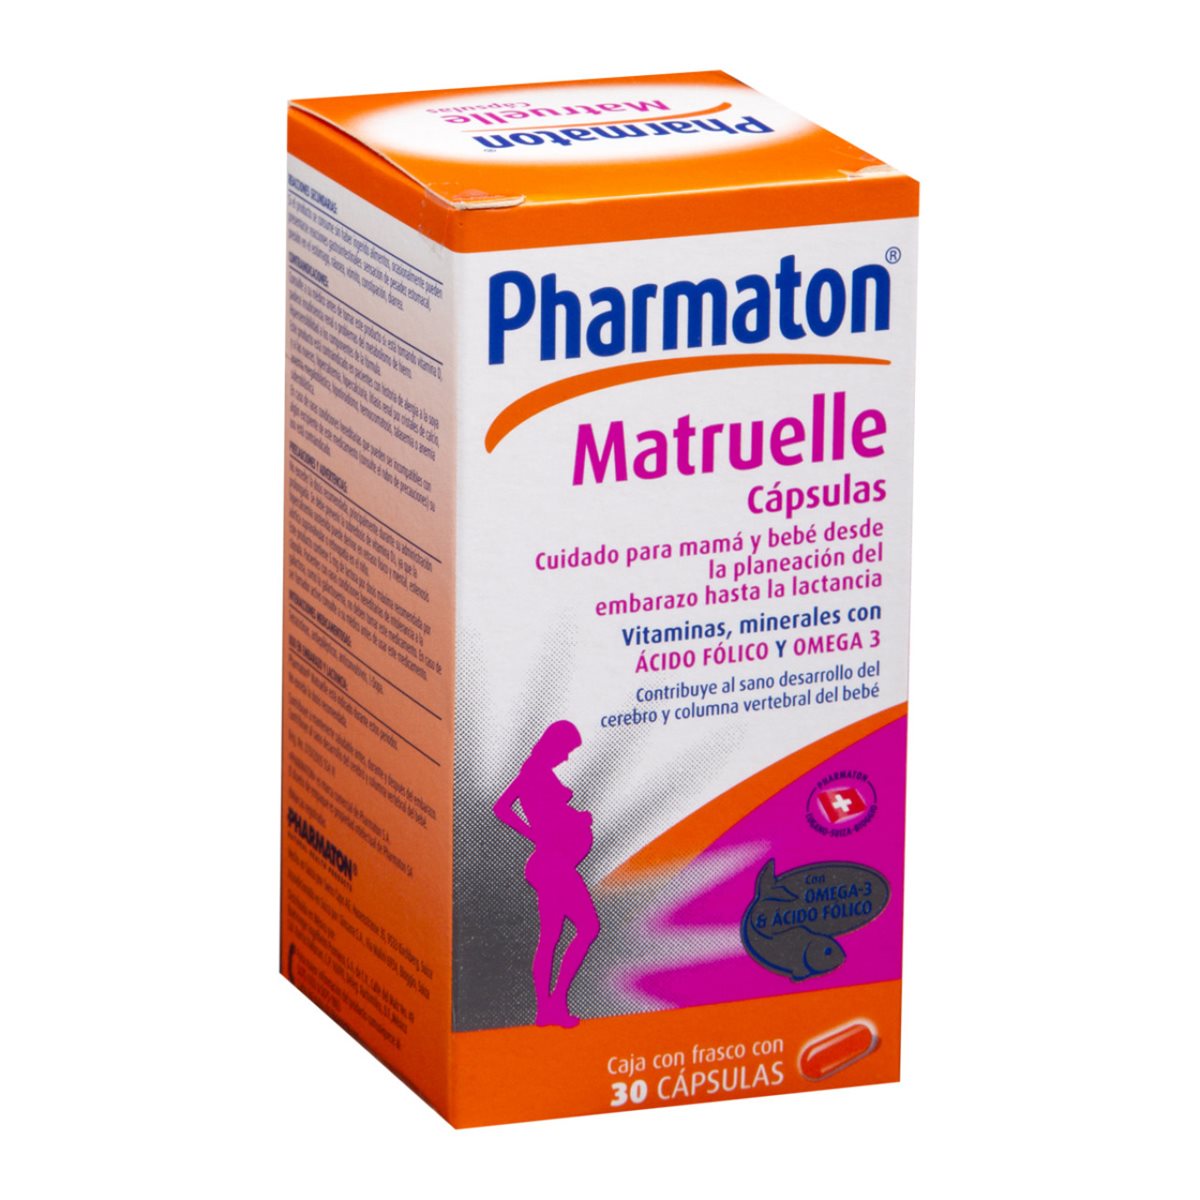 Suplemento vitamínico que será retirado del mercado guatemalteco. (Foto Prensa Libre: Cortesía Pharmaton)